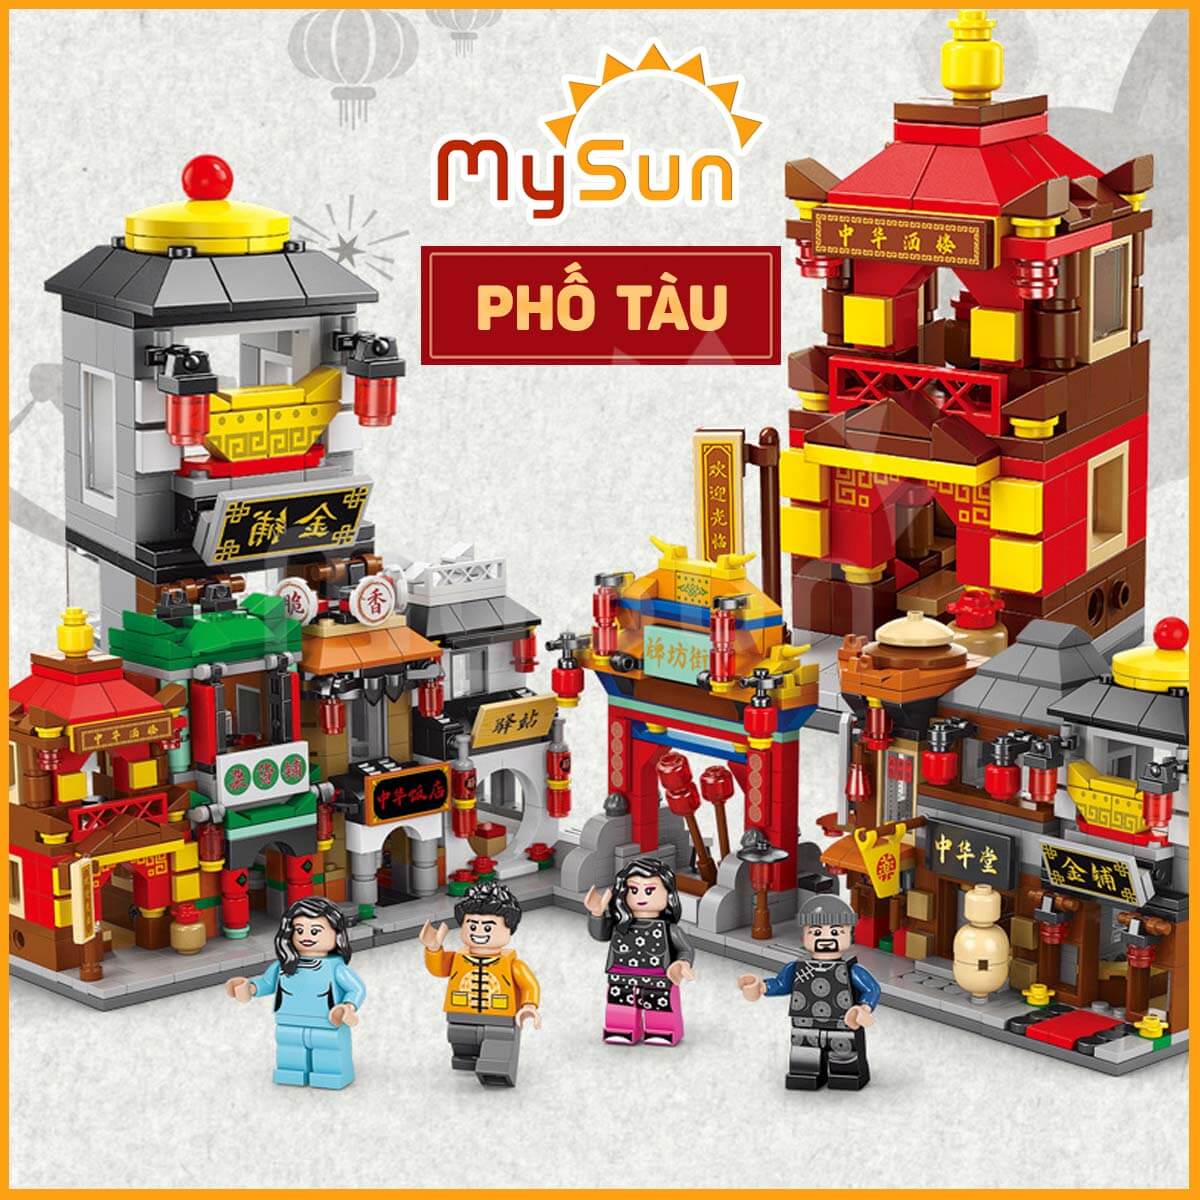 Bộ đồ chơi lắp ghép ráp xếp mô hình city thành phố Trung Hoa cho bé trai gái phát triển trí tuệ thông minh MySun